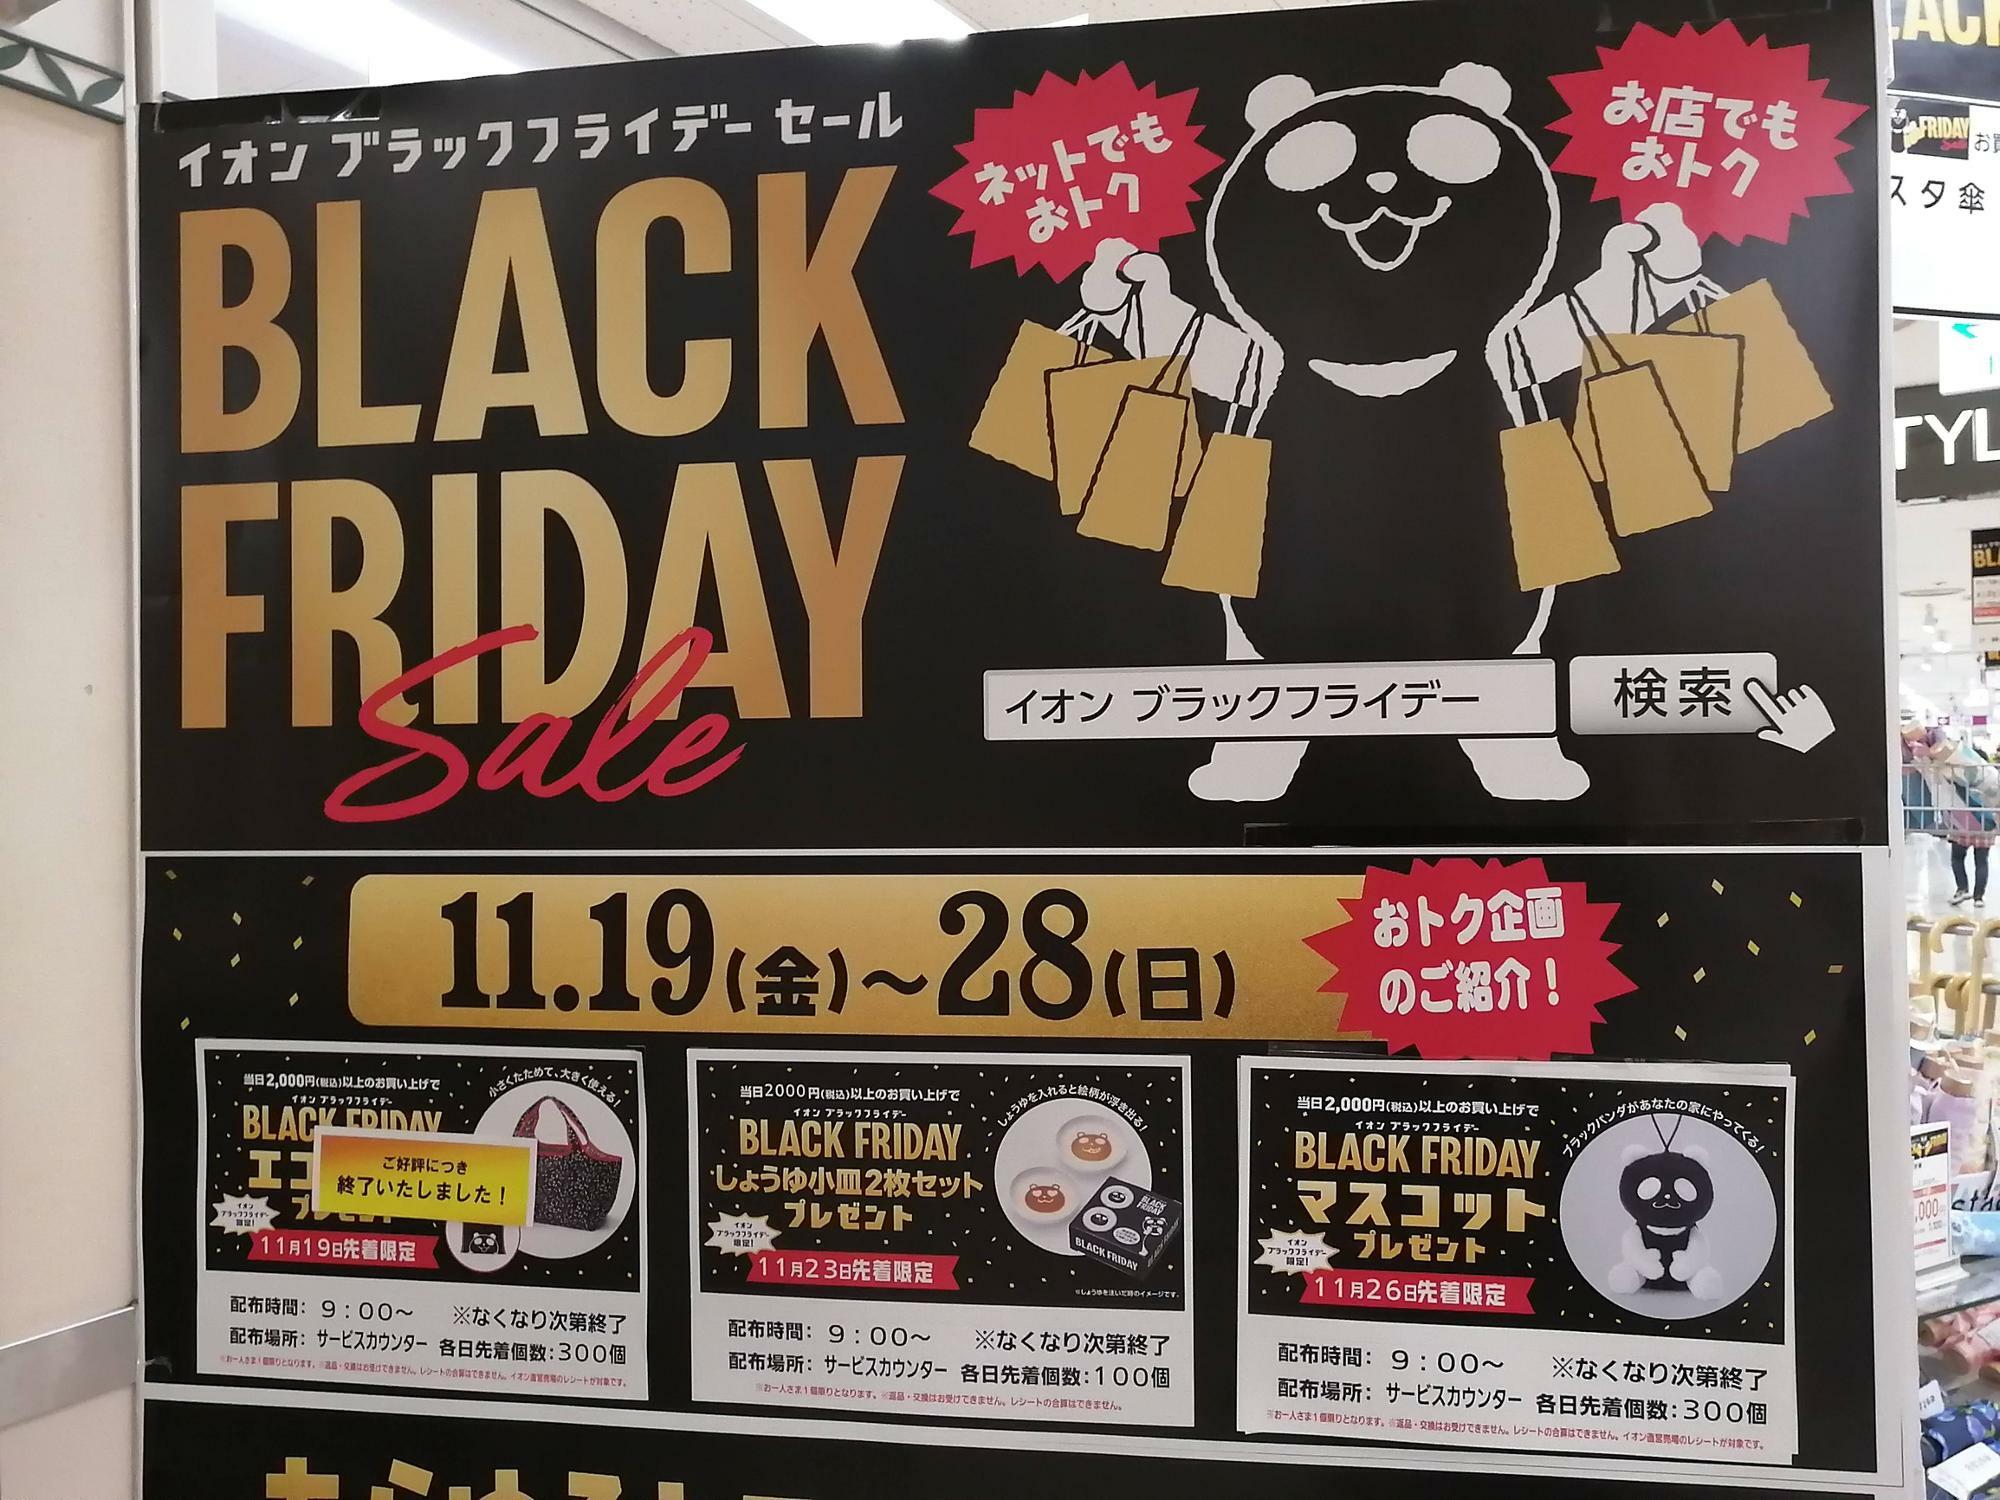 2,000円以上のお買い物で素敵なブラックパンダグッズがもらえます。ほ…欲しいっ！